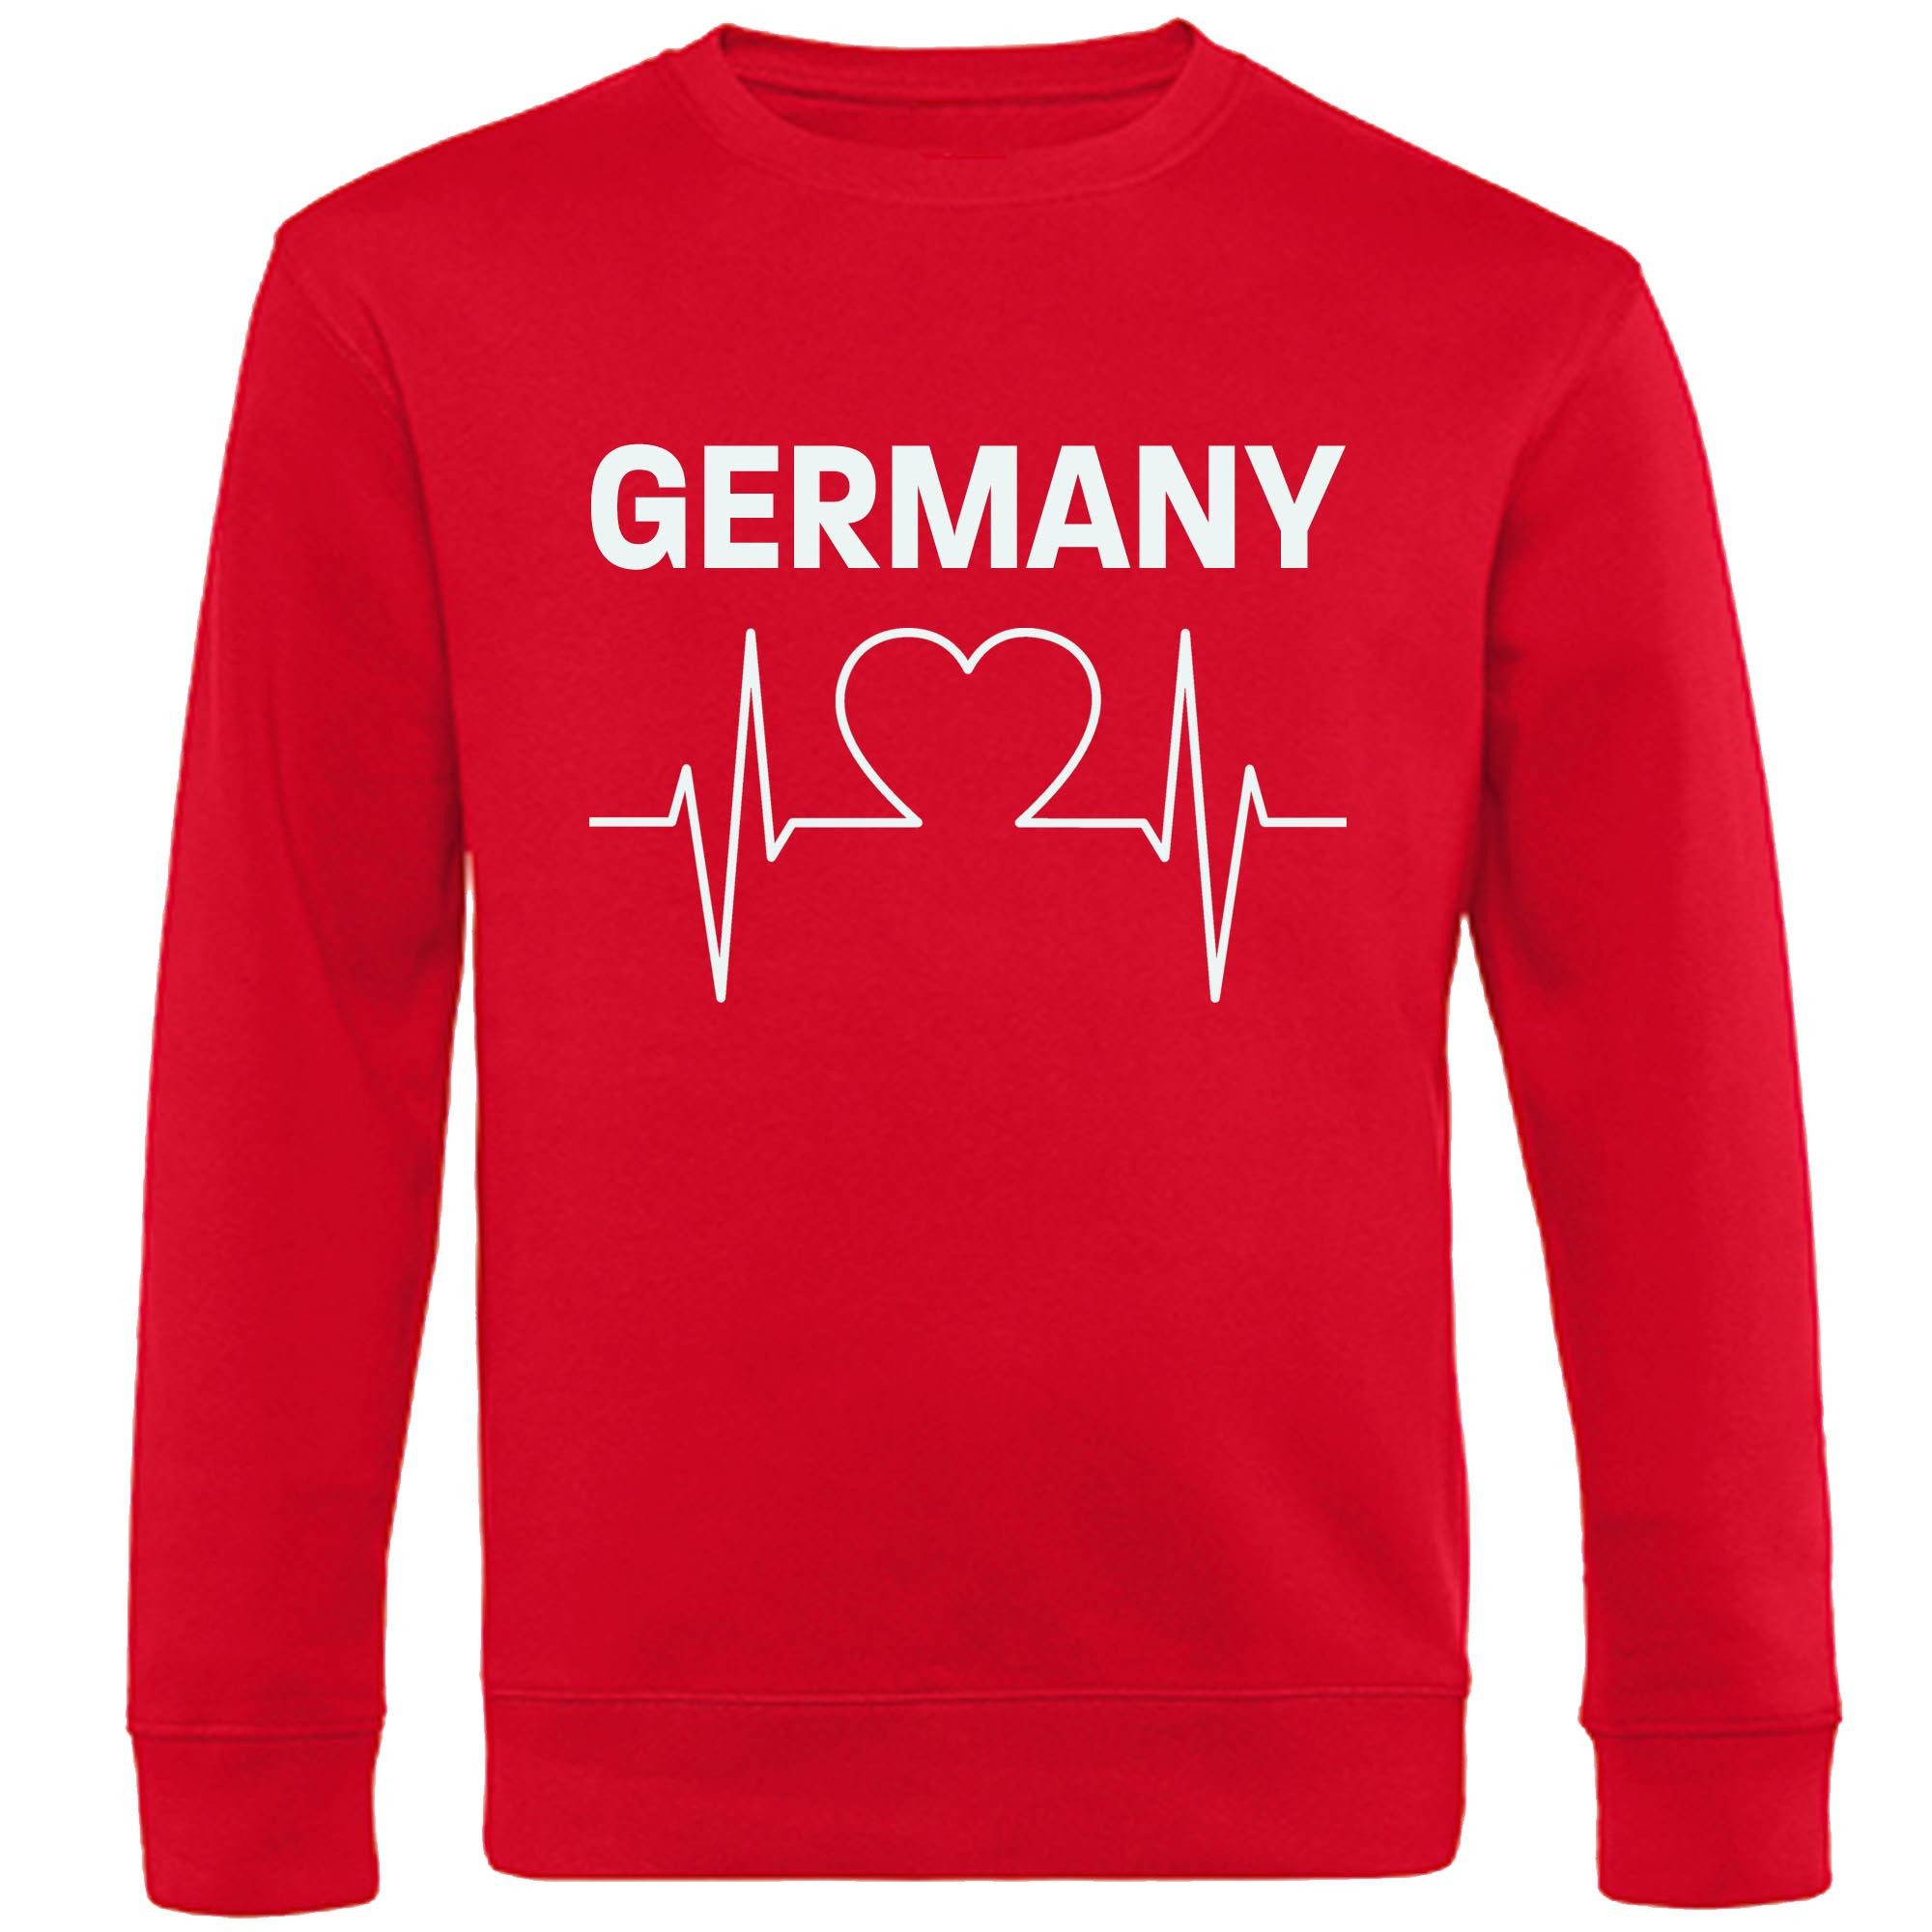 multifanshop Sweatshirt Germany - Herzschlag - Pullover